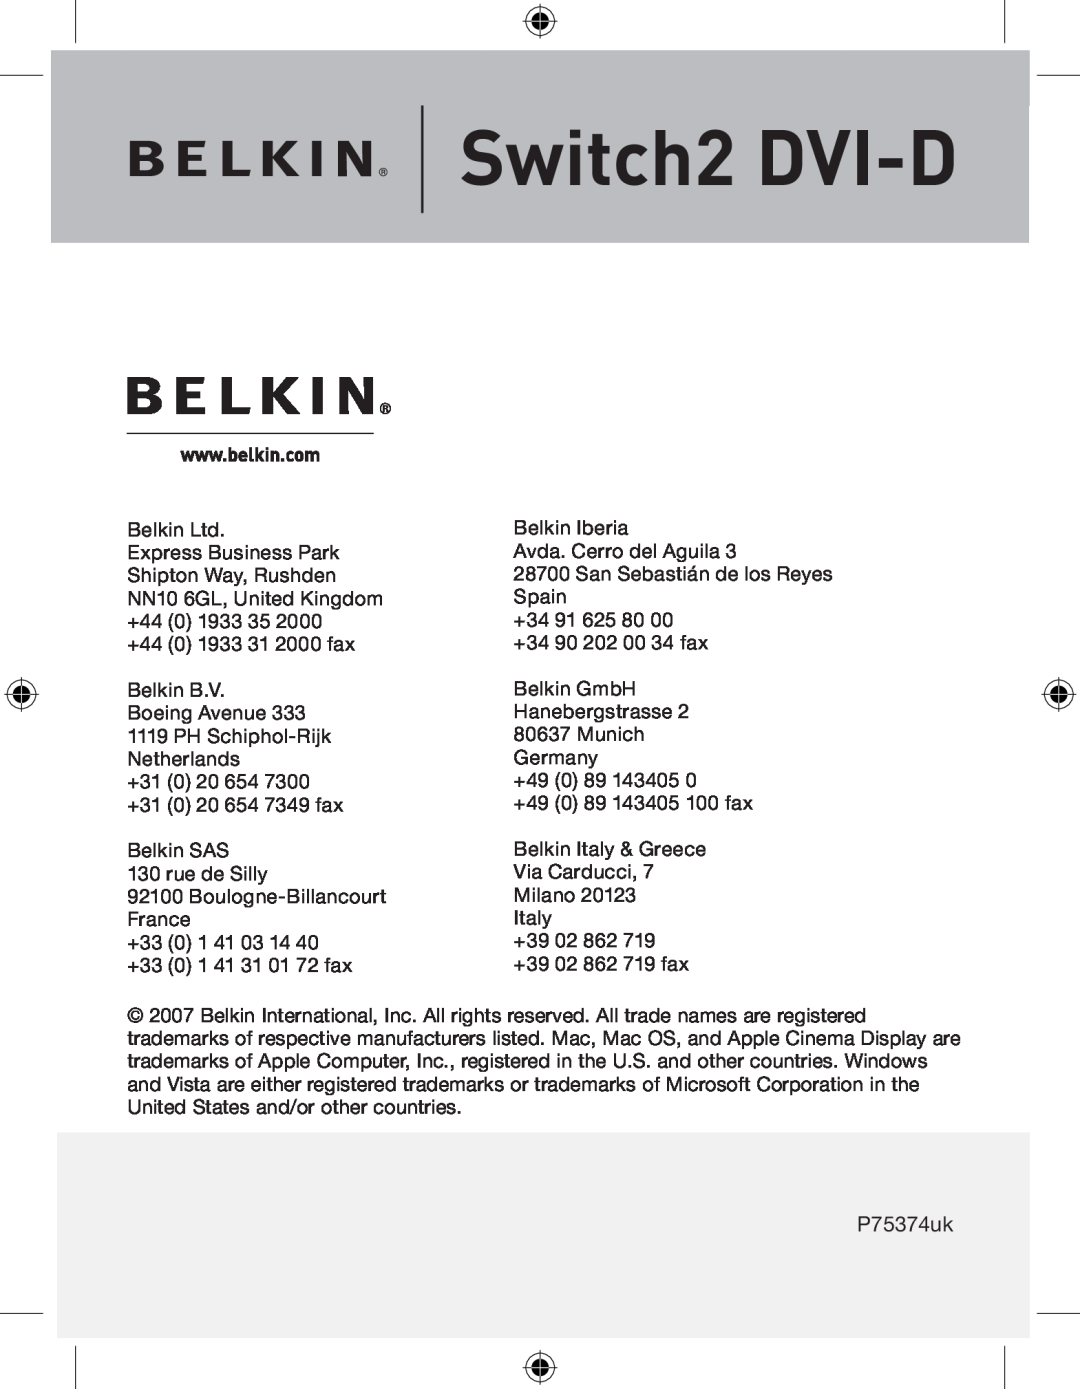 Belkin F1DG 102Duk manual Switch2 DVI-D, P75374uk 